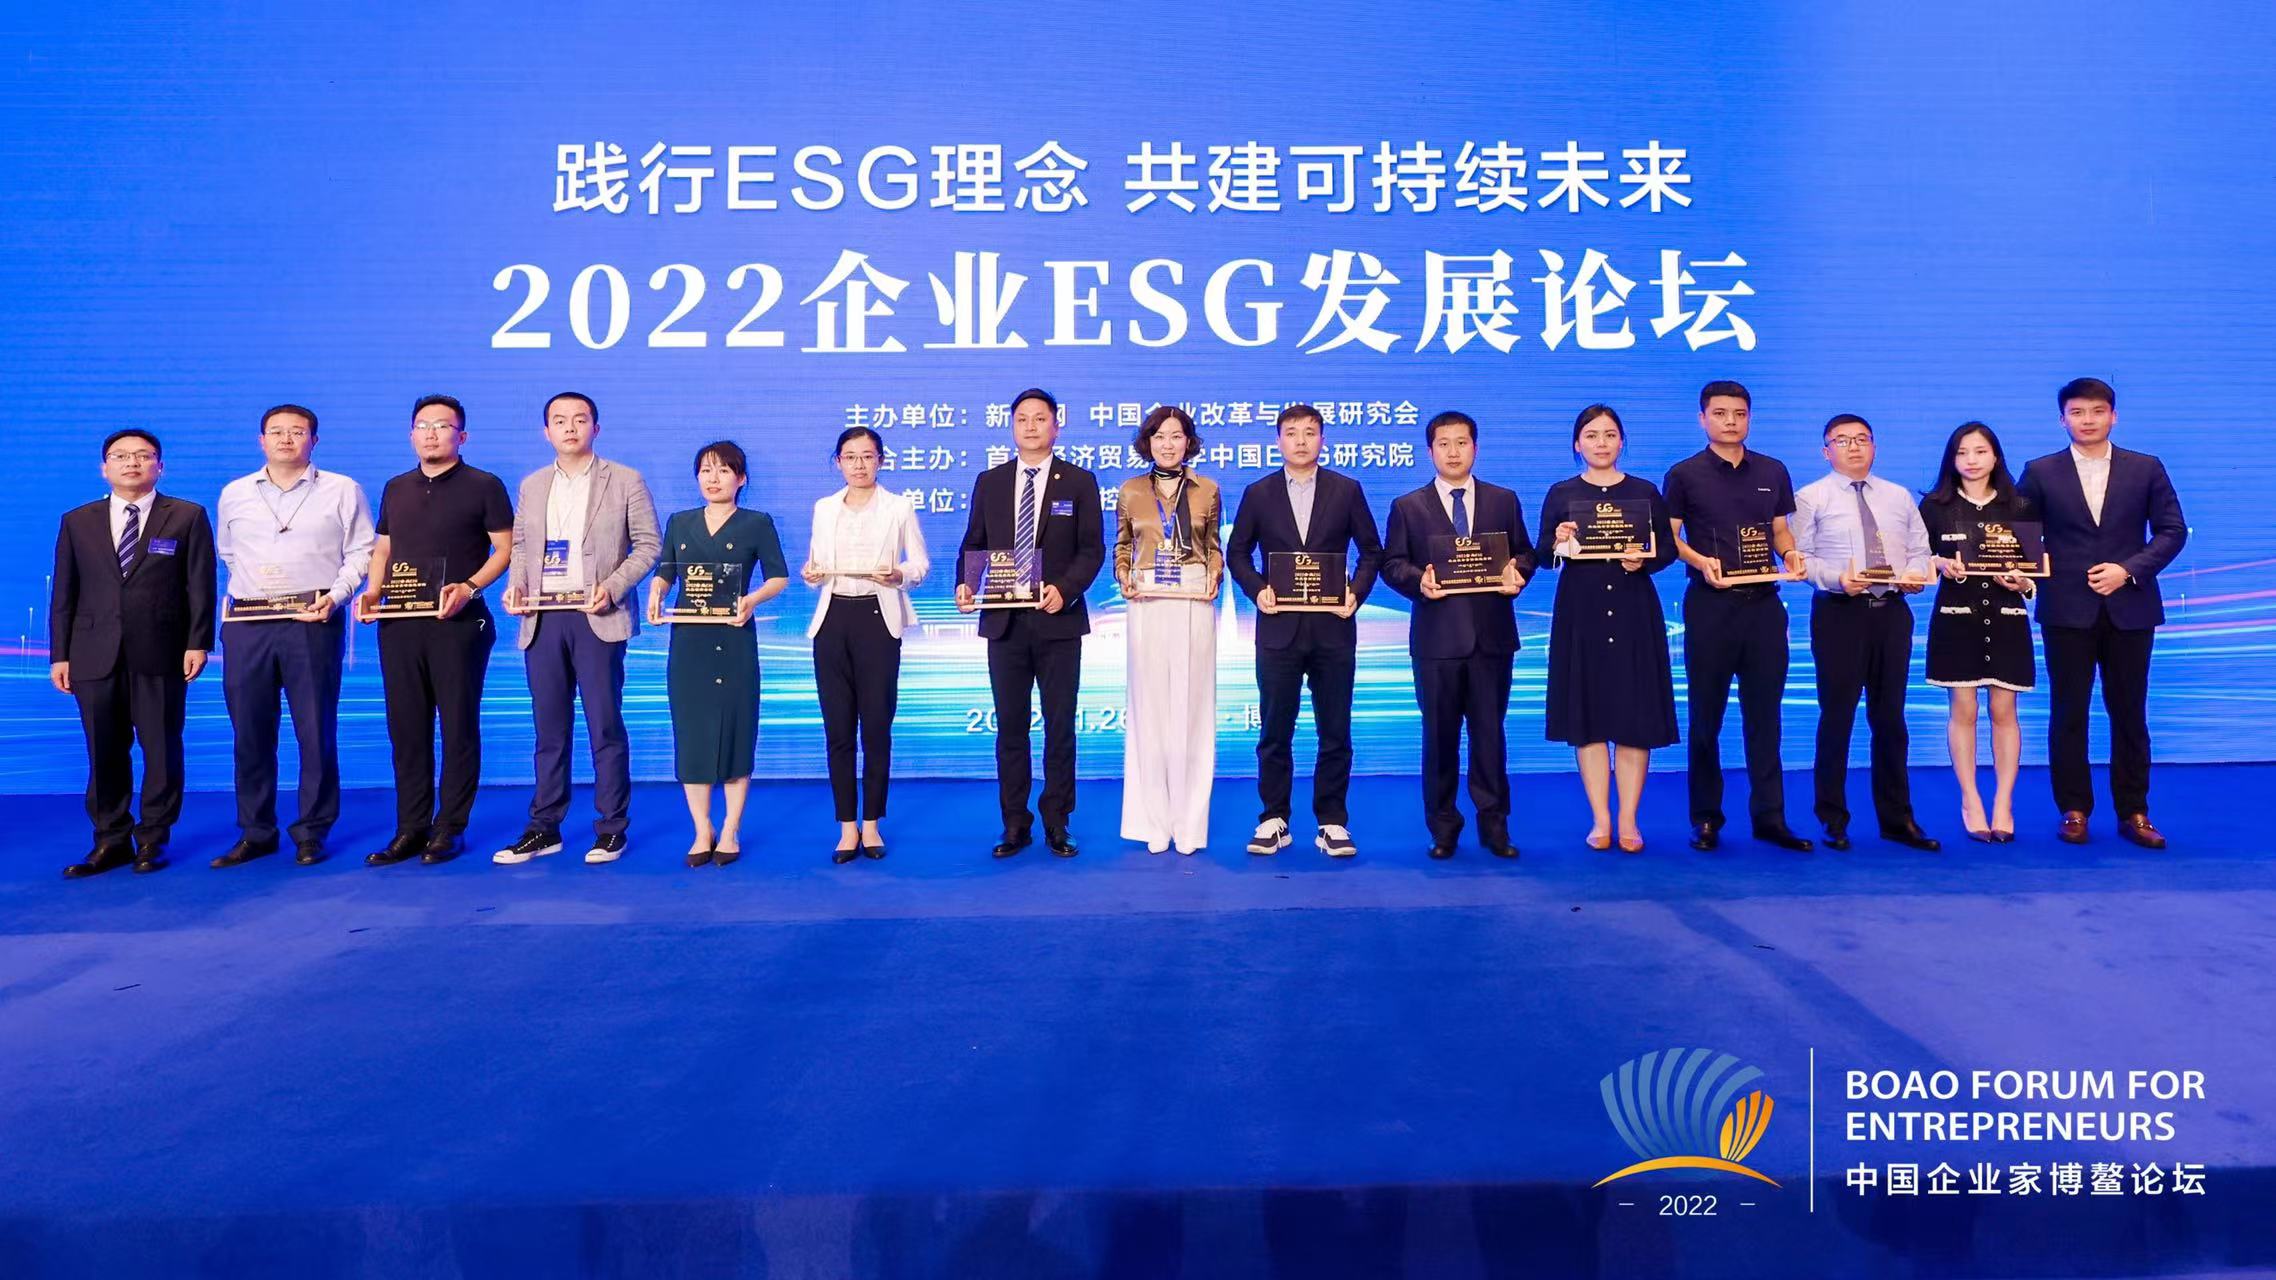 2022中国企业家博鳌论坛举行 为期4天 将举办40余场分论坛